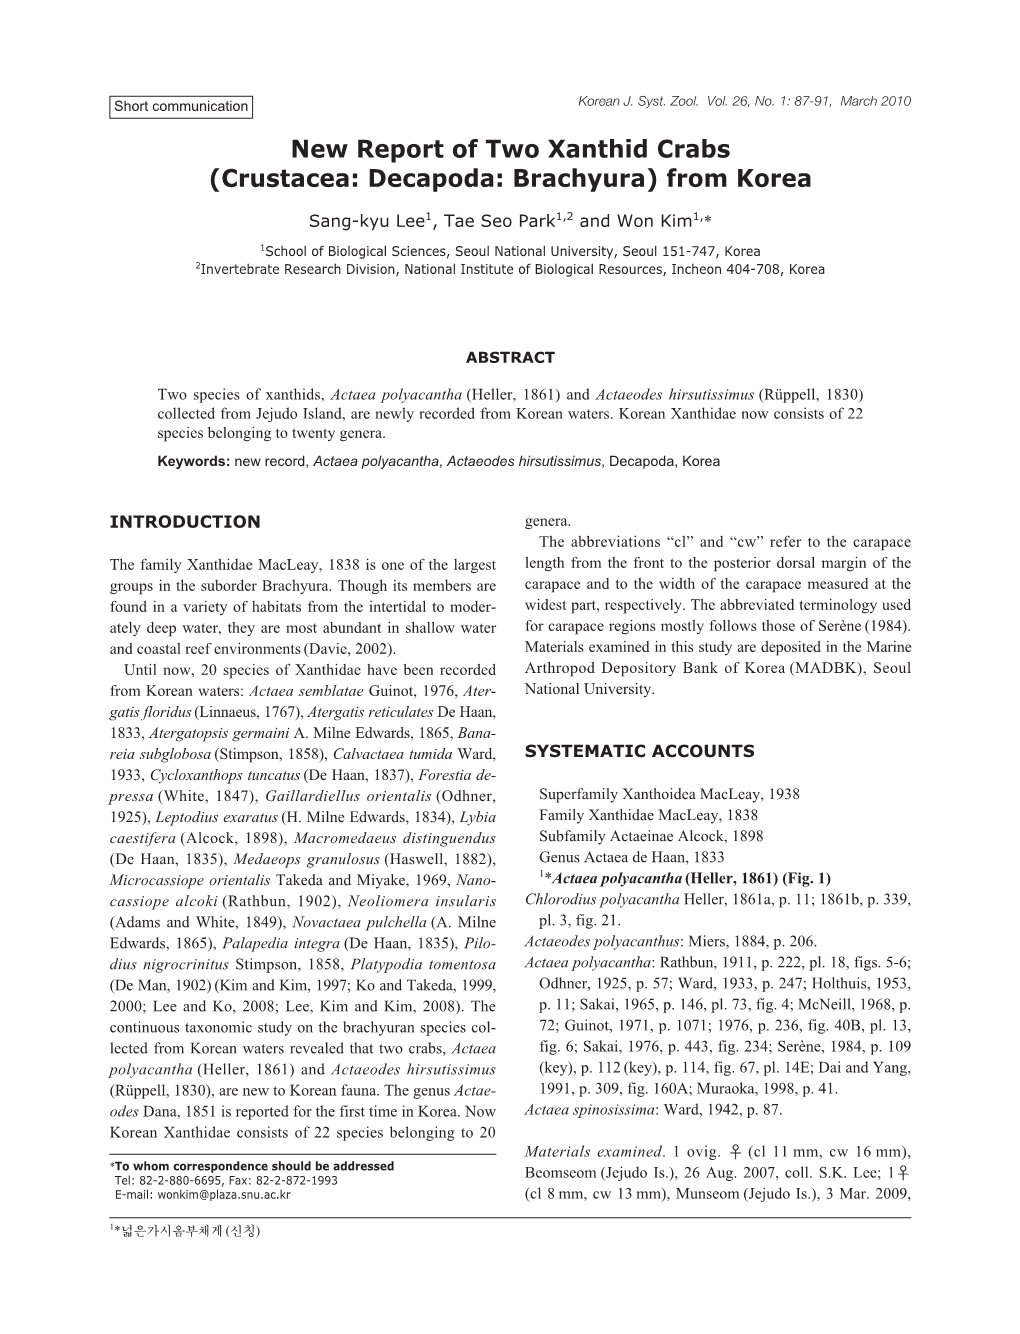 New Report of Two Xanthid Crabs (Crustacea: Decapoda: Brachyura) from Korea